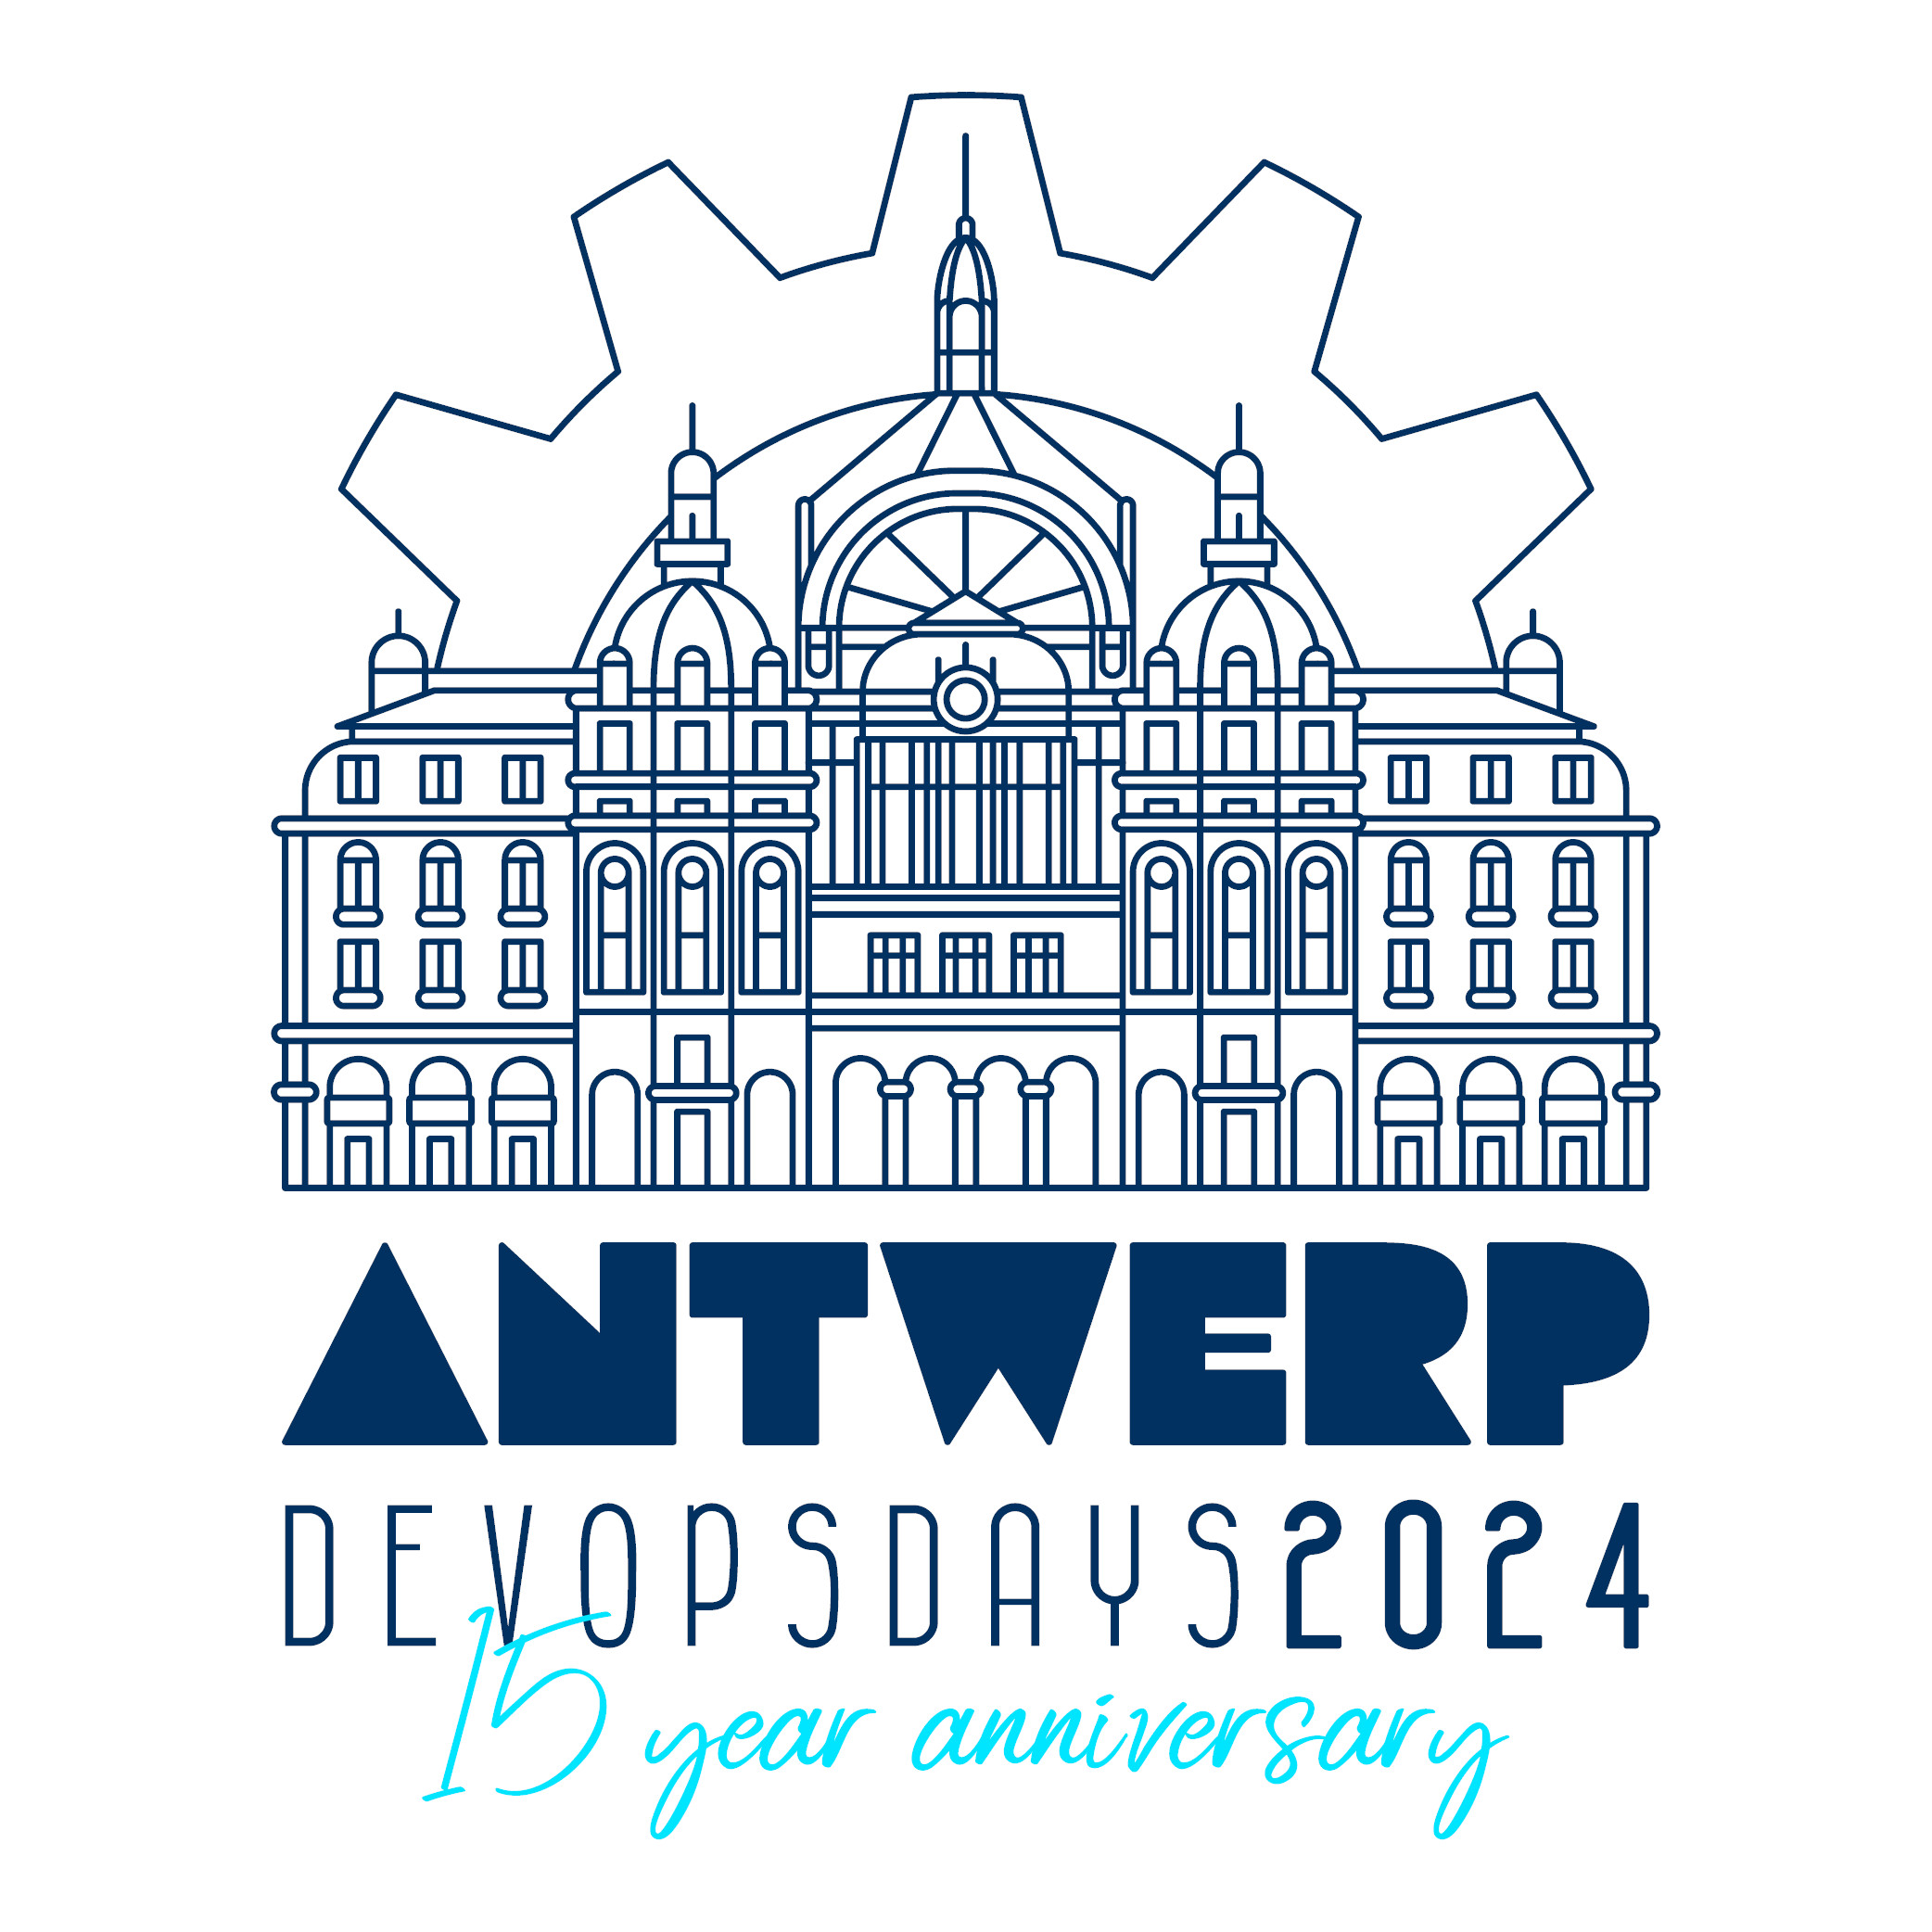 devopsdays 15 year anniversary celebration: Antwerp